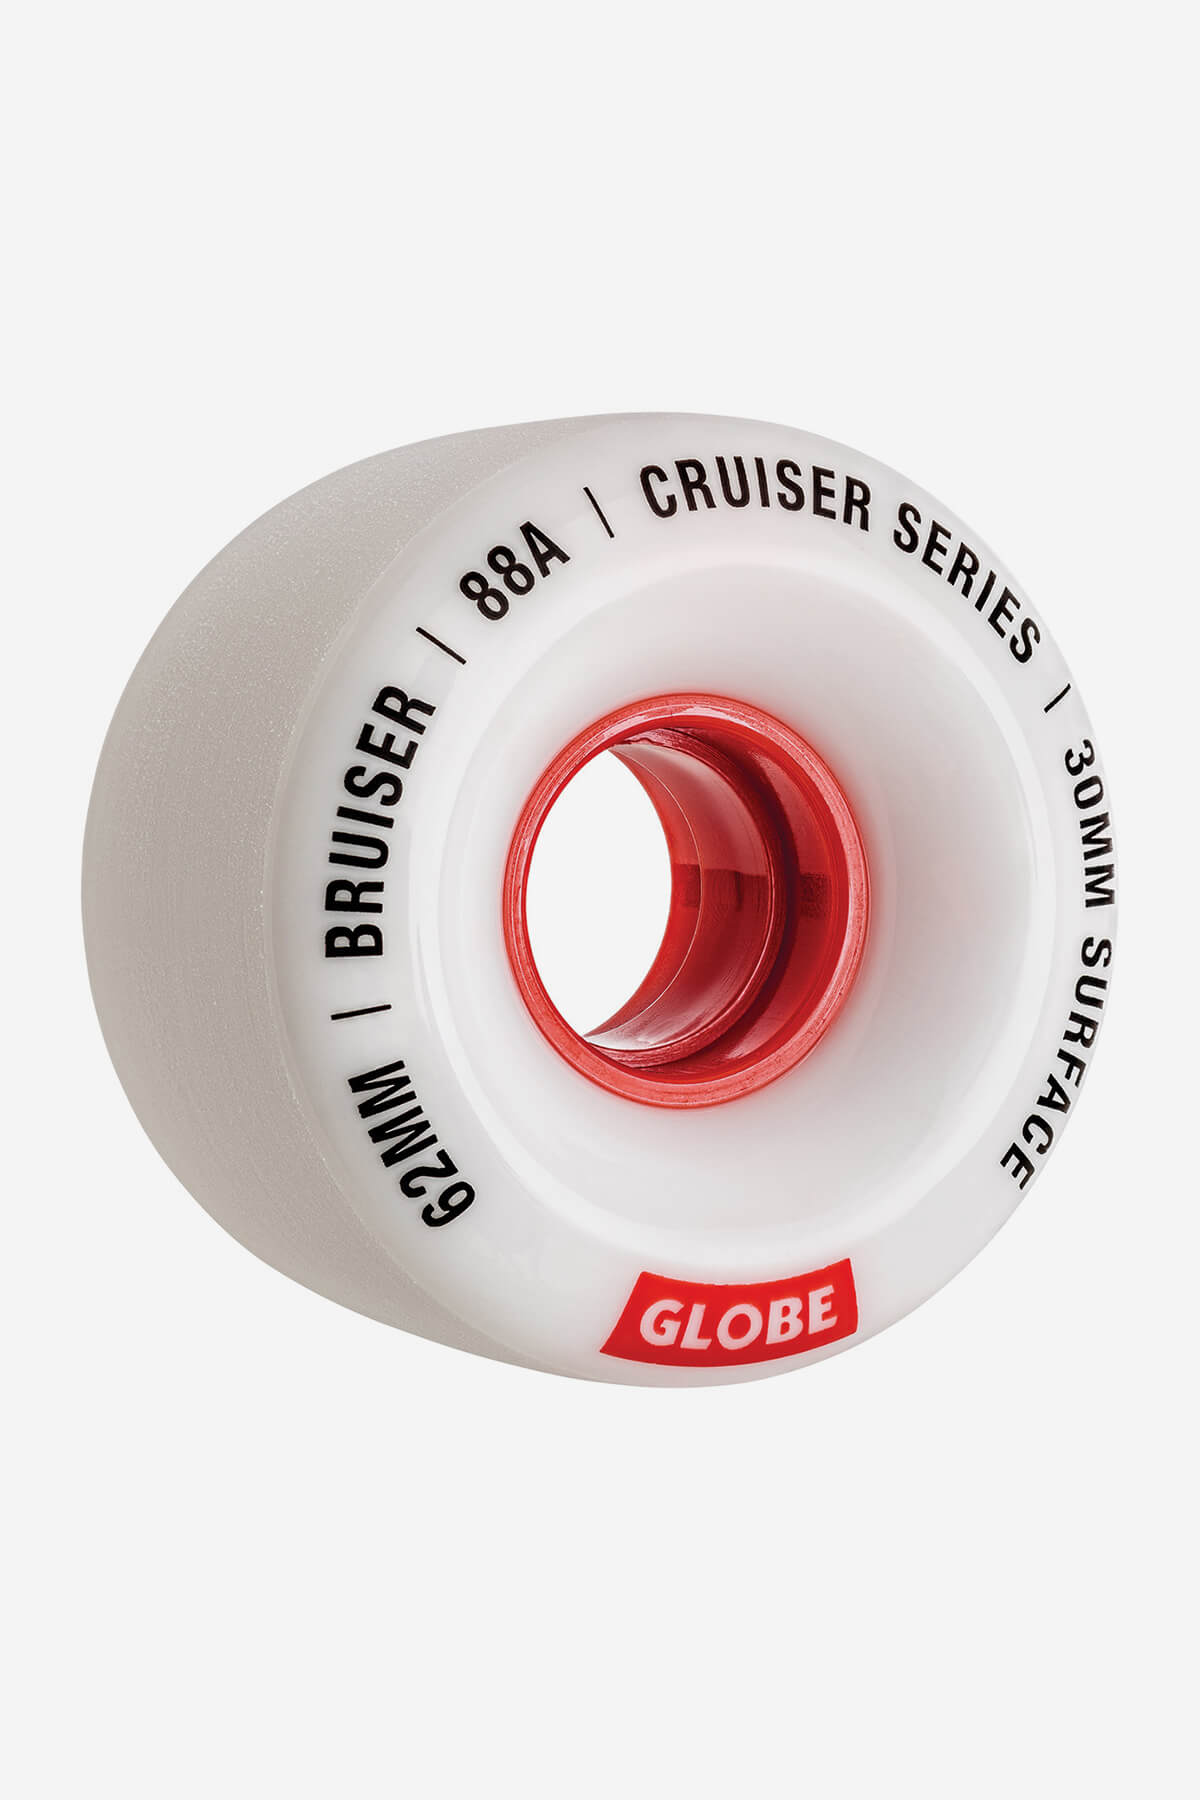 Globe Wheels Bruiser Cruiser Skateboard Wheel 62mm in White/Red/62